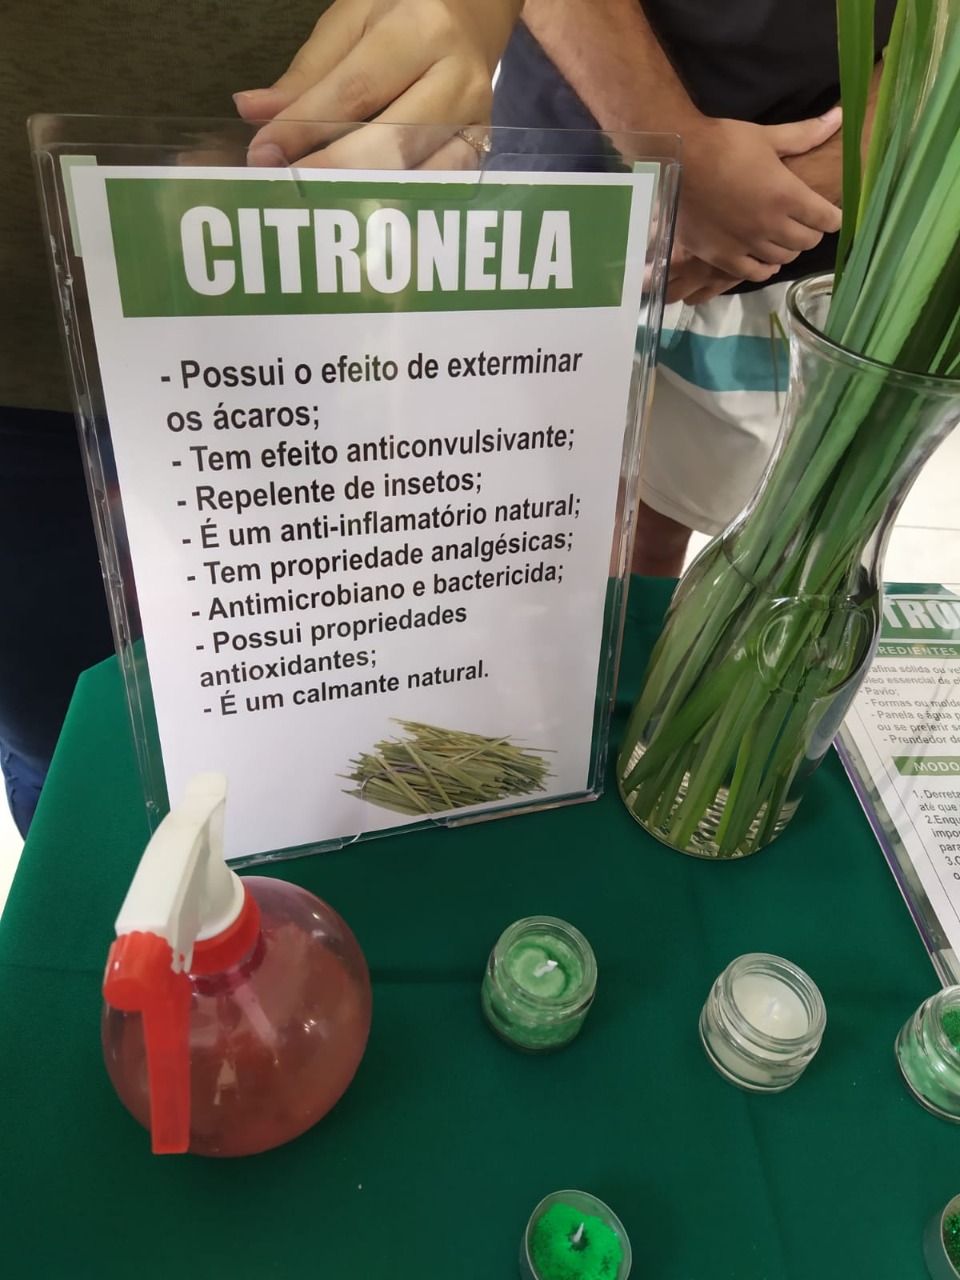 Solução caseira de repelente natural com citronela pode ajudar no combate aos mosquitos. (Foto: Divulgação).